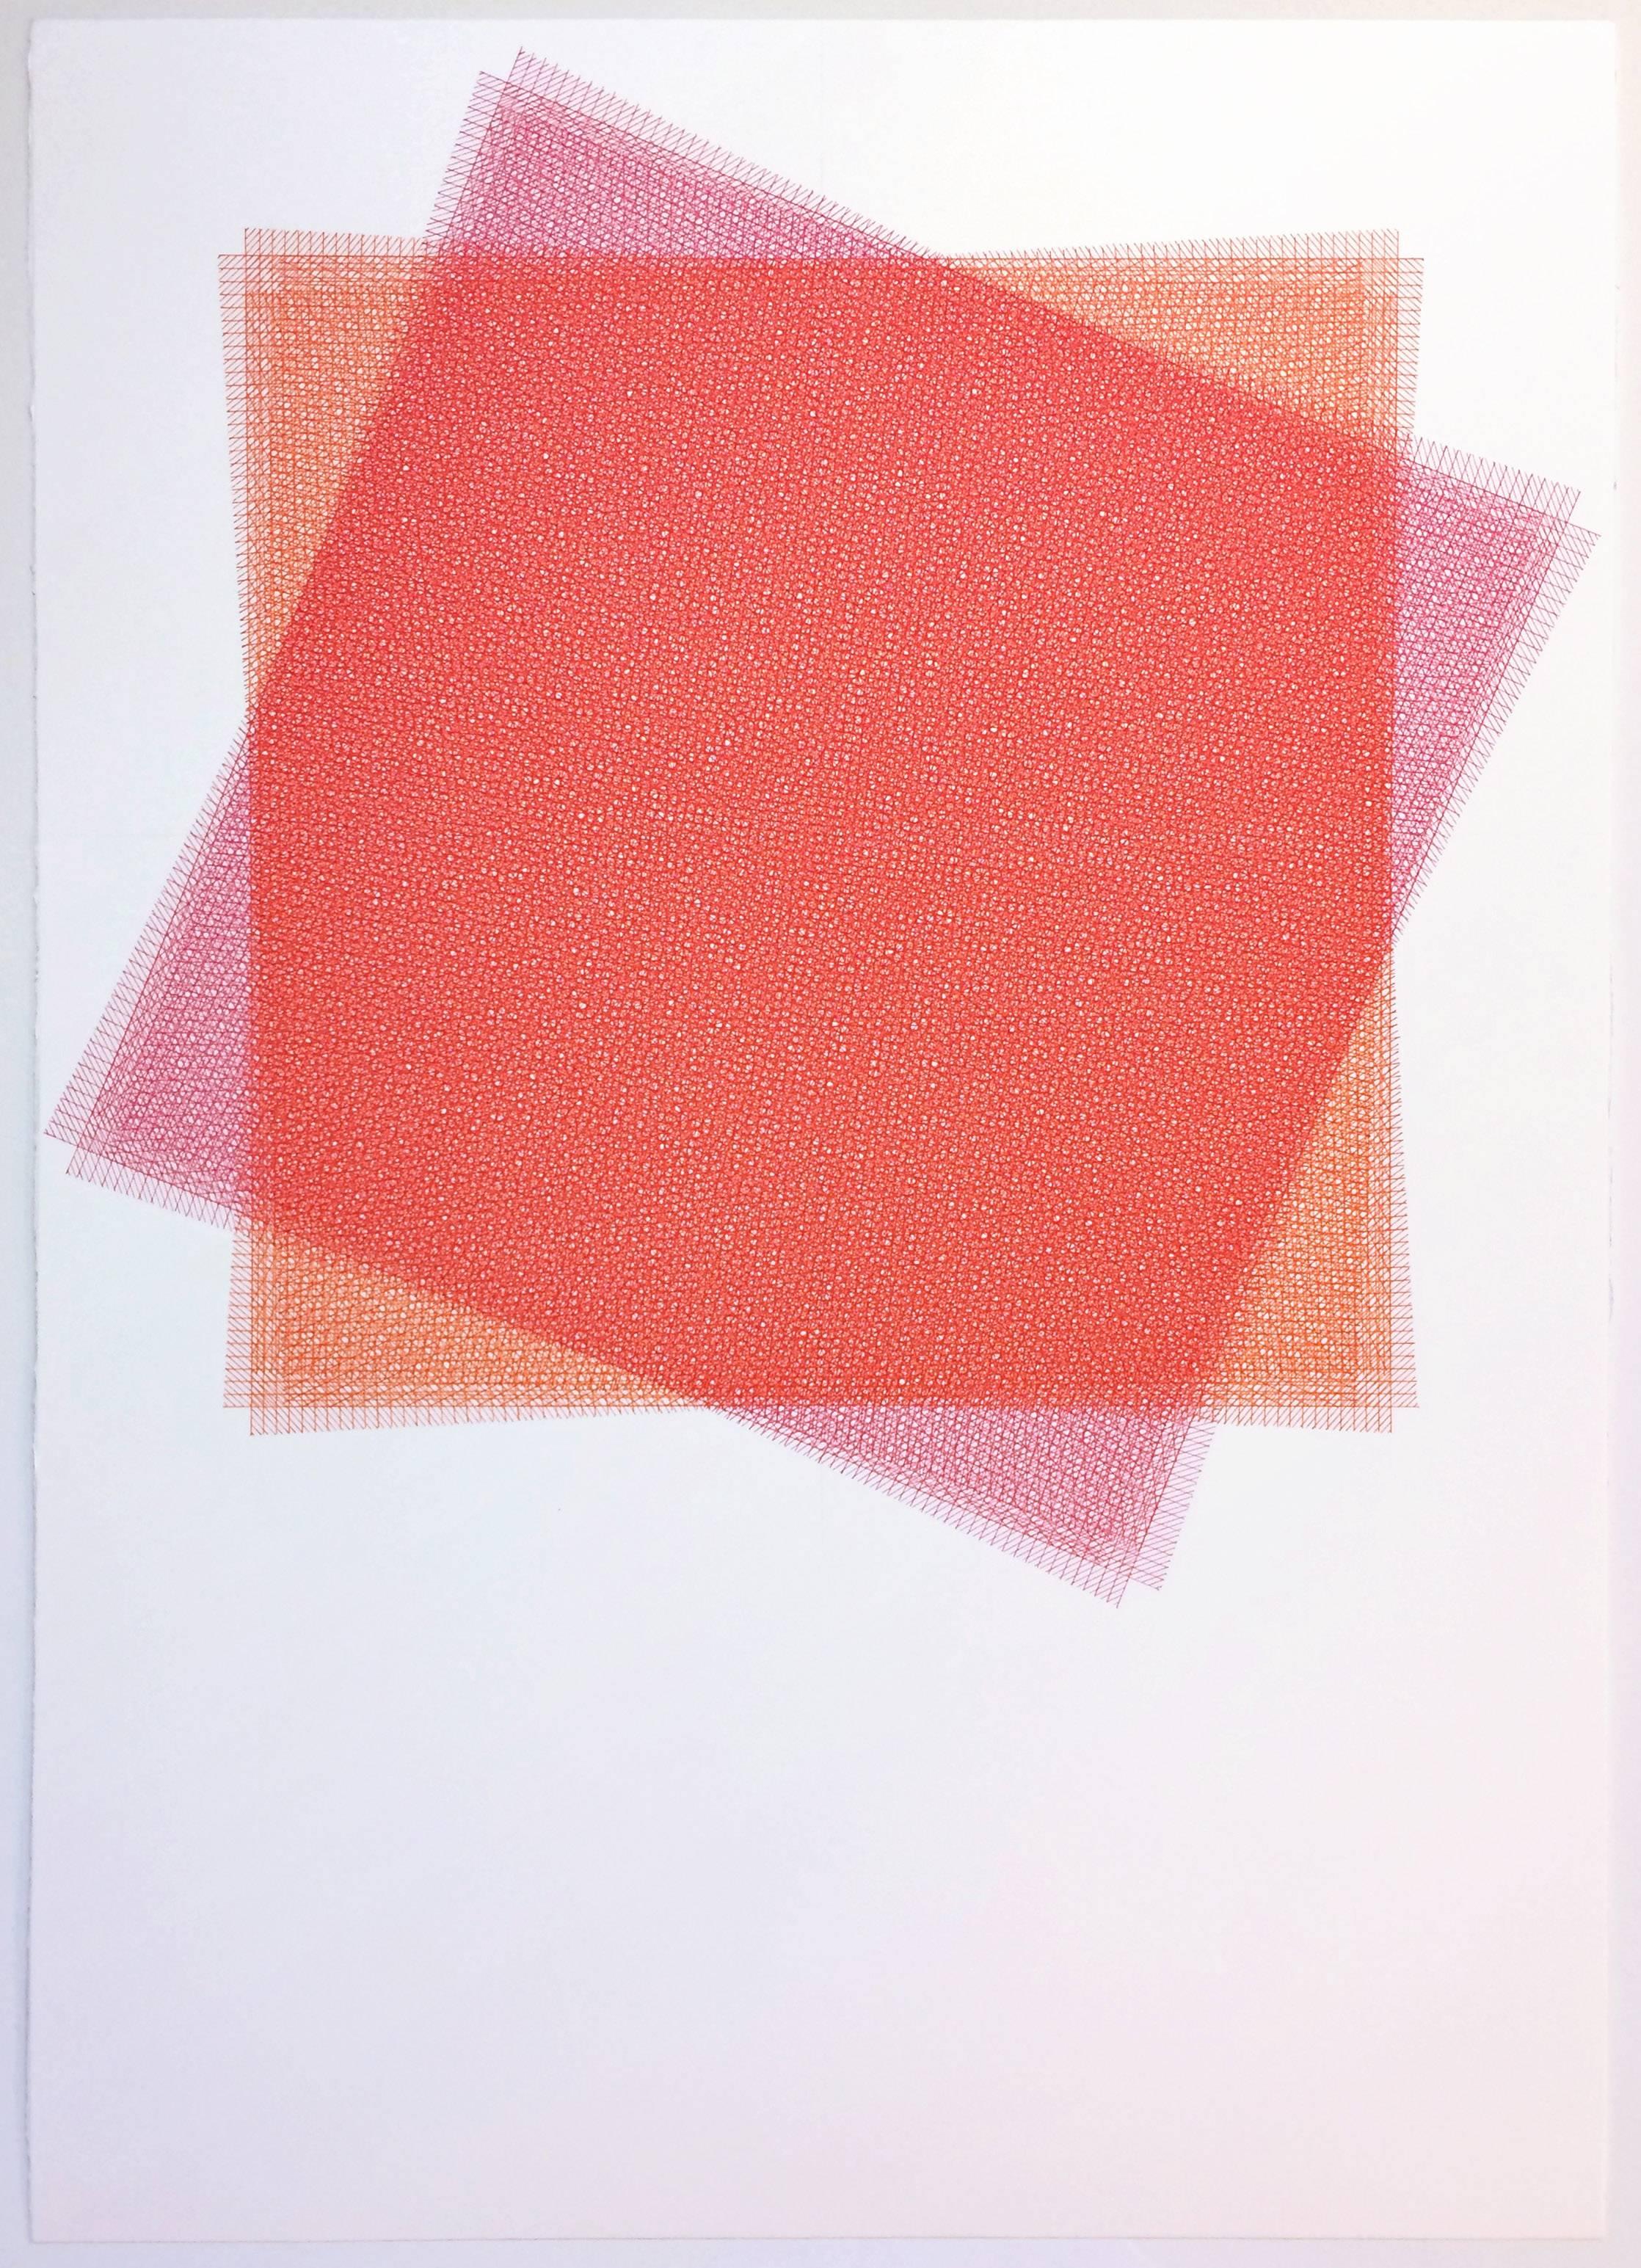 Sara Eichner, 16 couches, carré rouge et rose, 2015, encre, papier chiffon, stylo